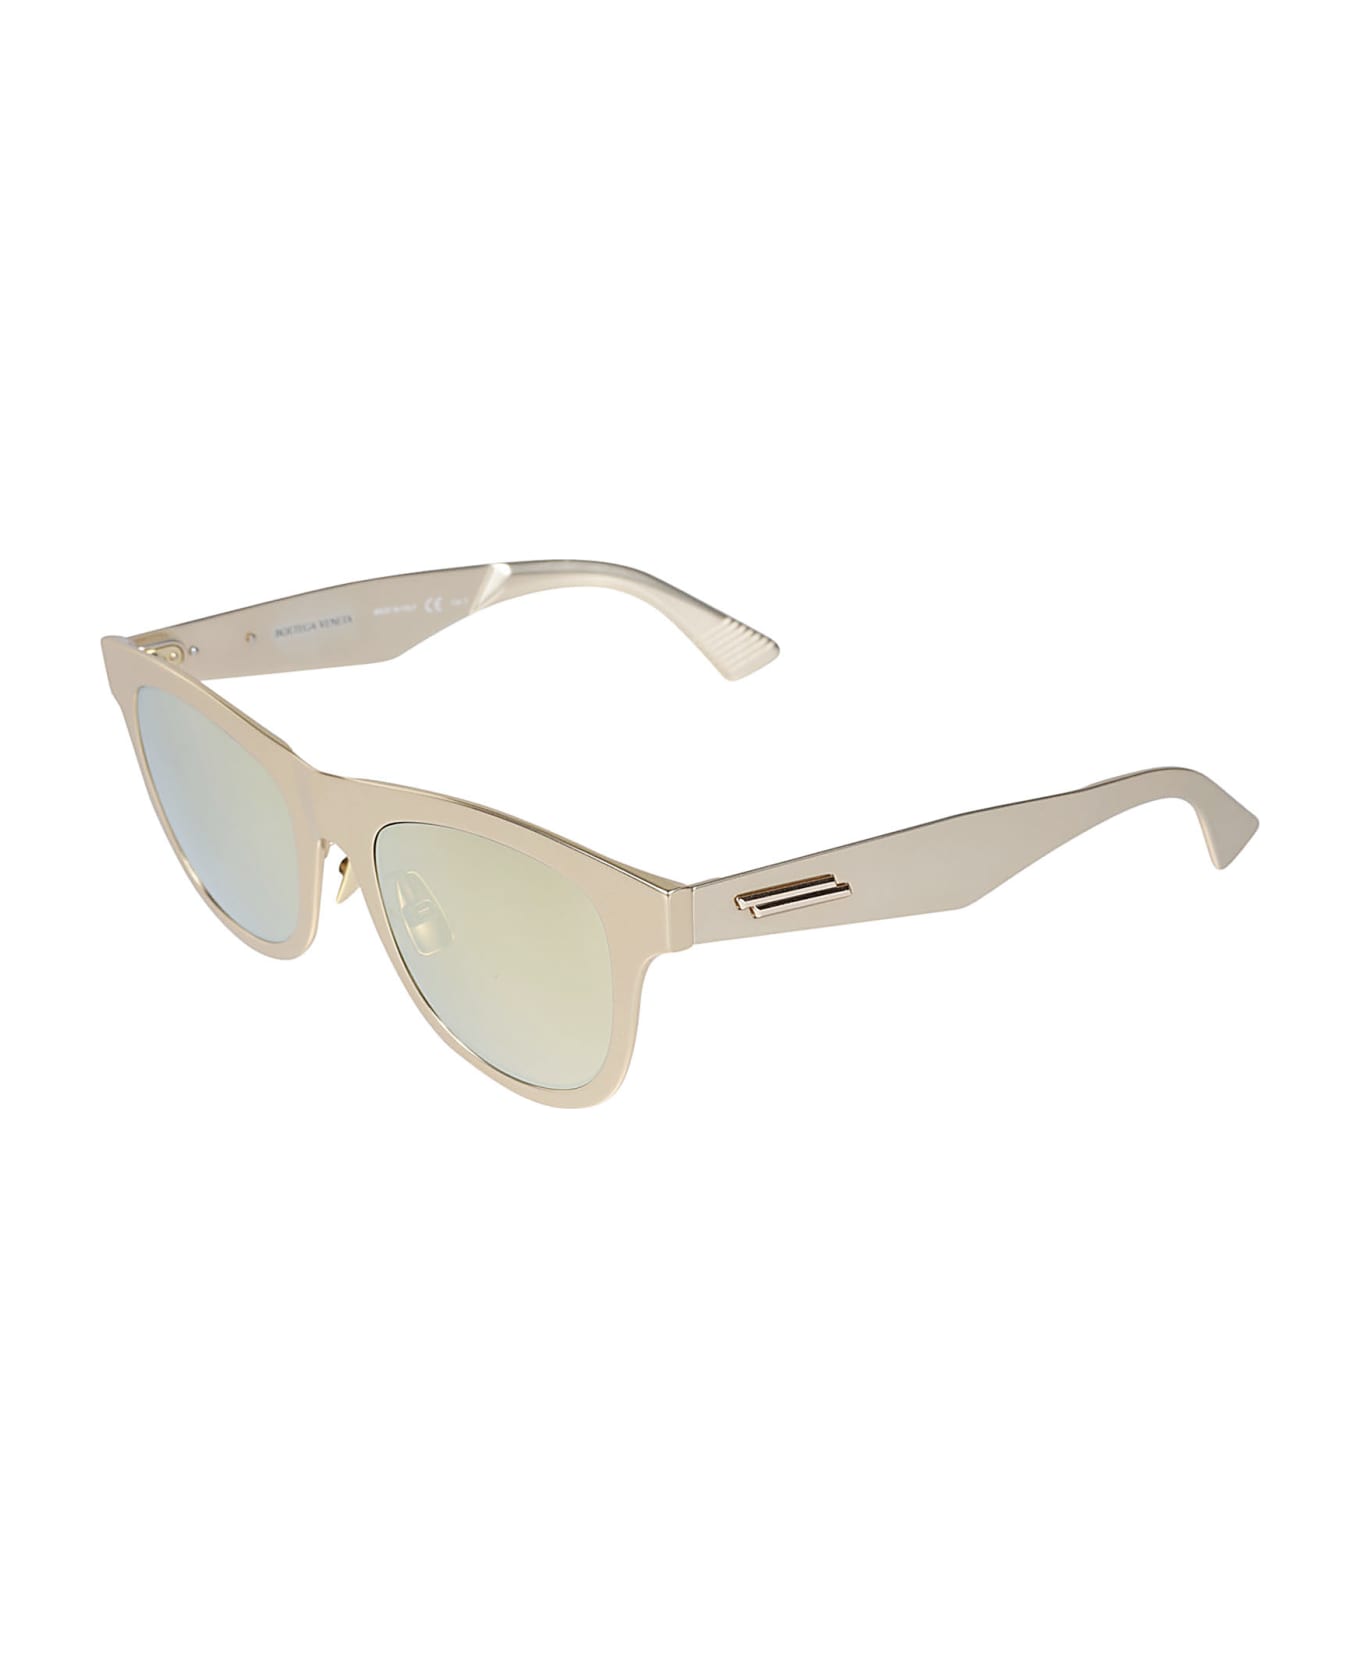 Bottega Veneta Eyewear Wayfarer Sunglasses These - Gold